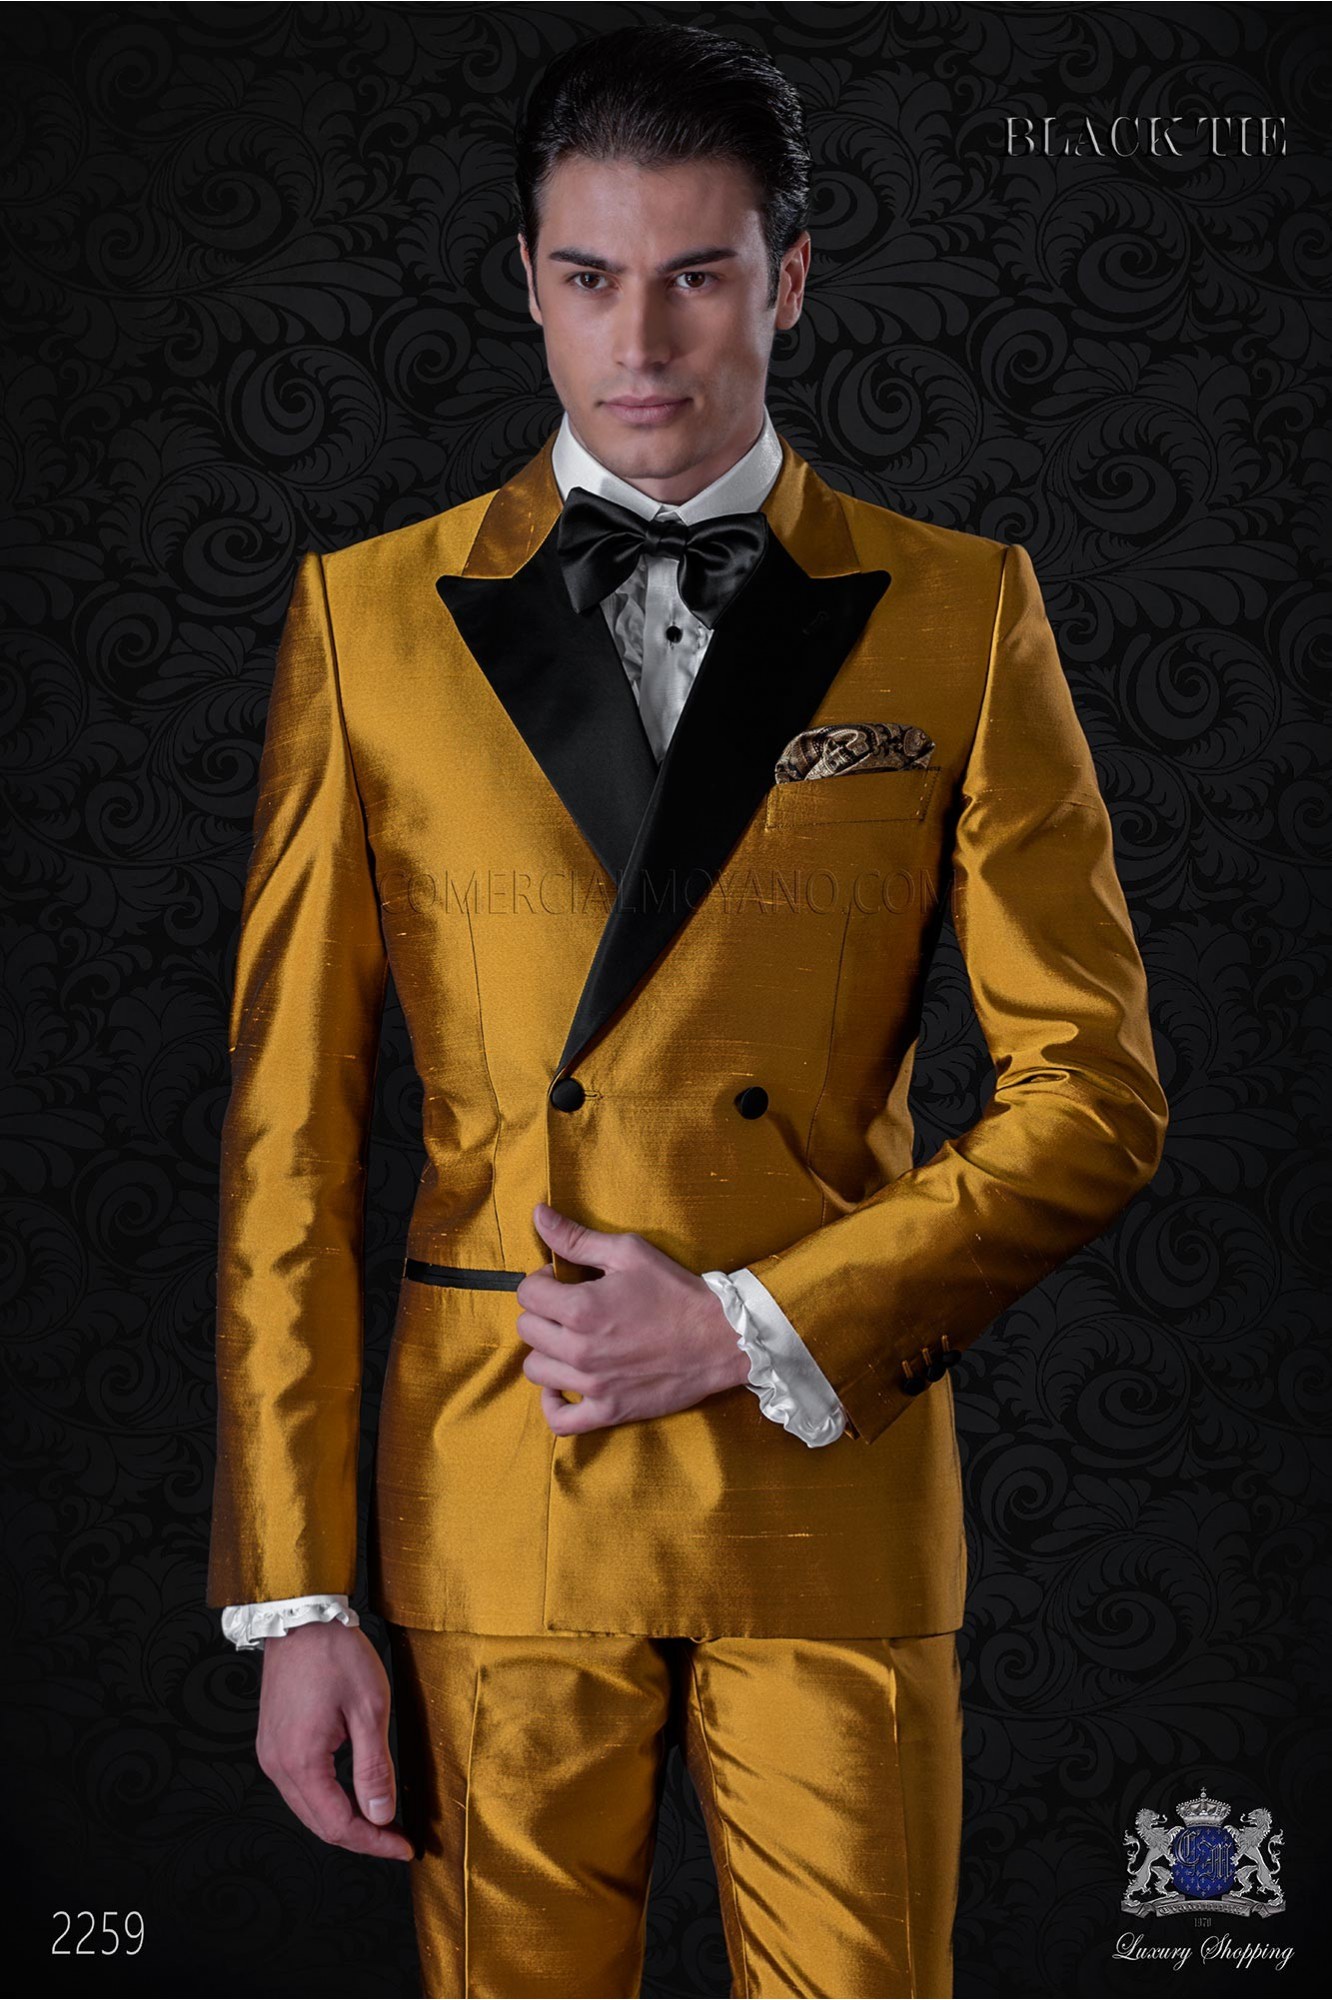 Esmoquin cruzado dorado shantung con solapas de raso. Tejido shantung mixto seda modelo: 2259 Mario Moyano colección Black Tie